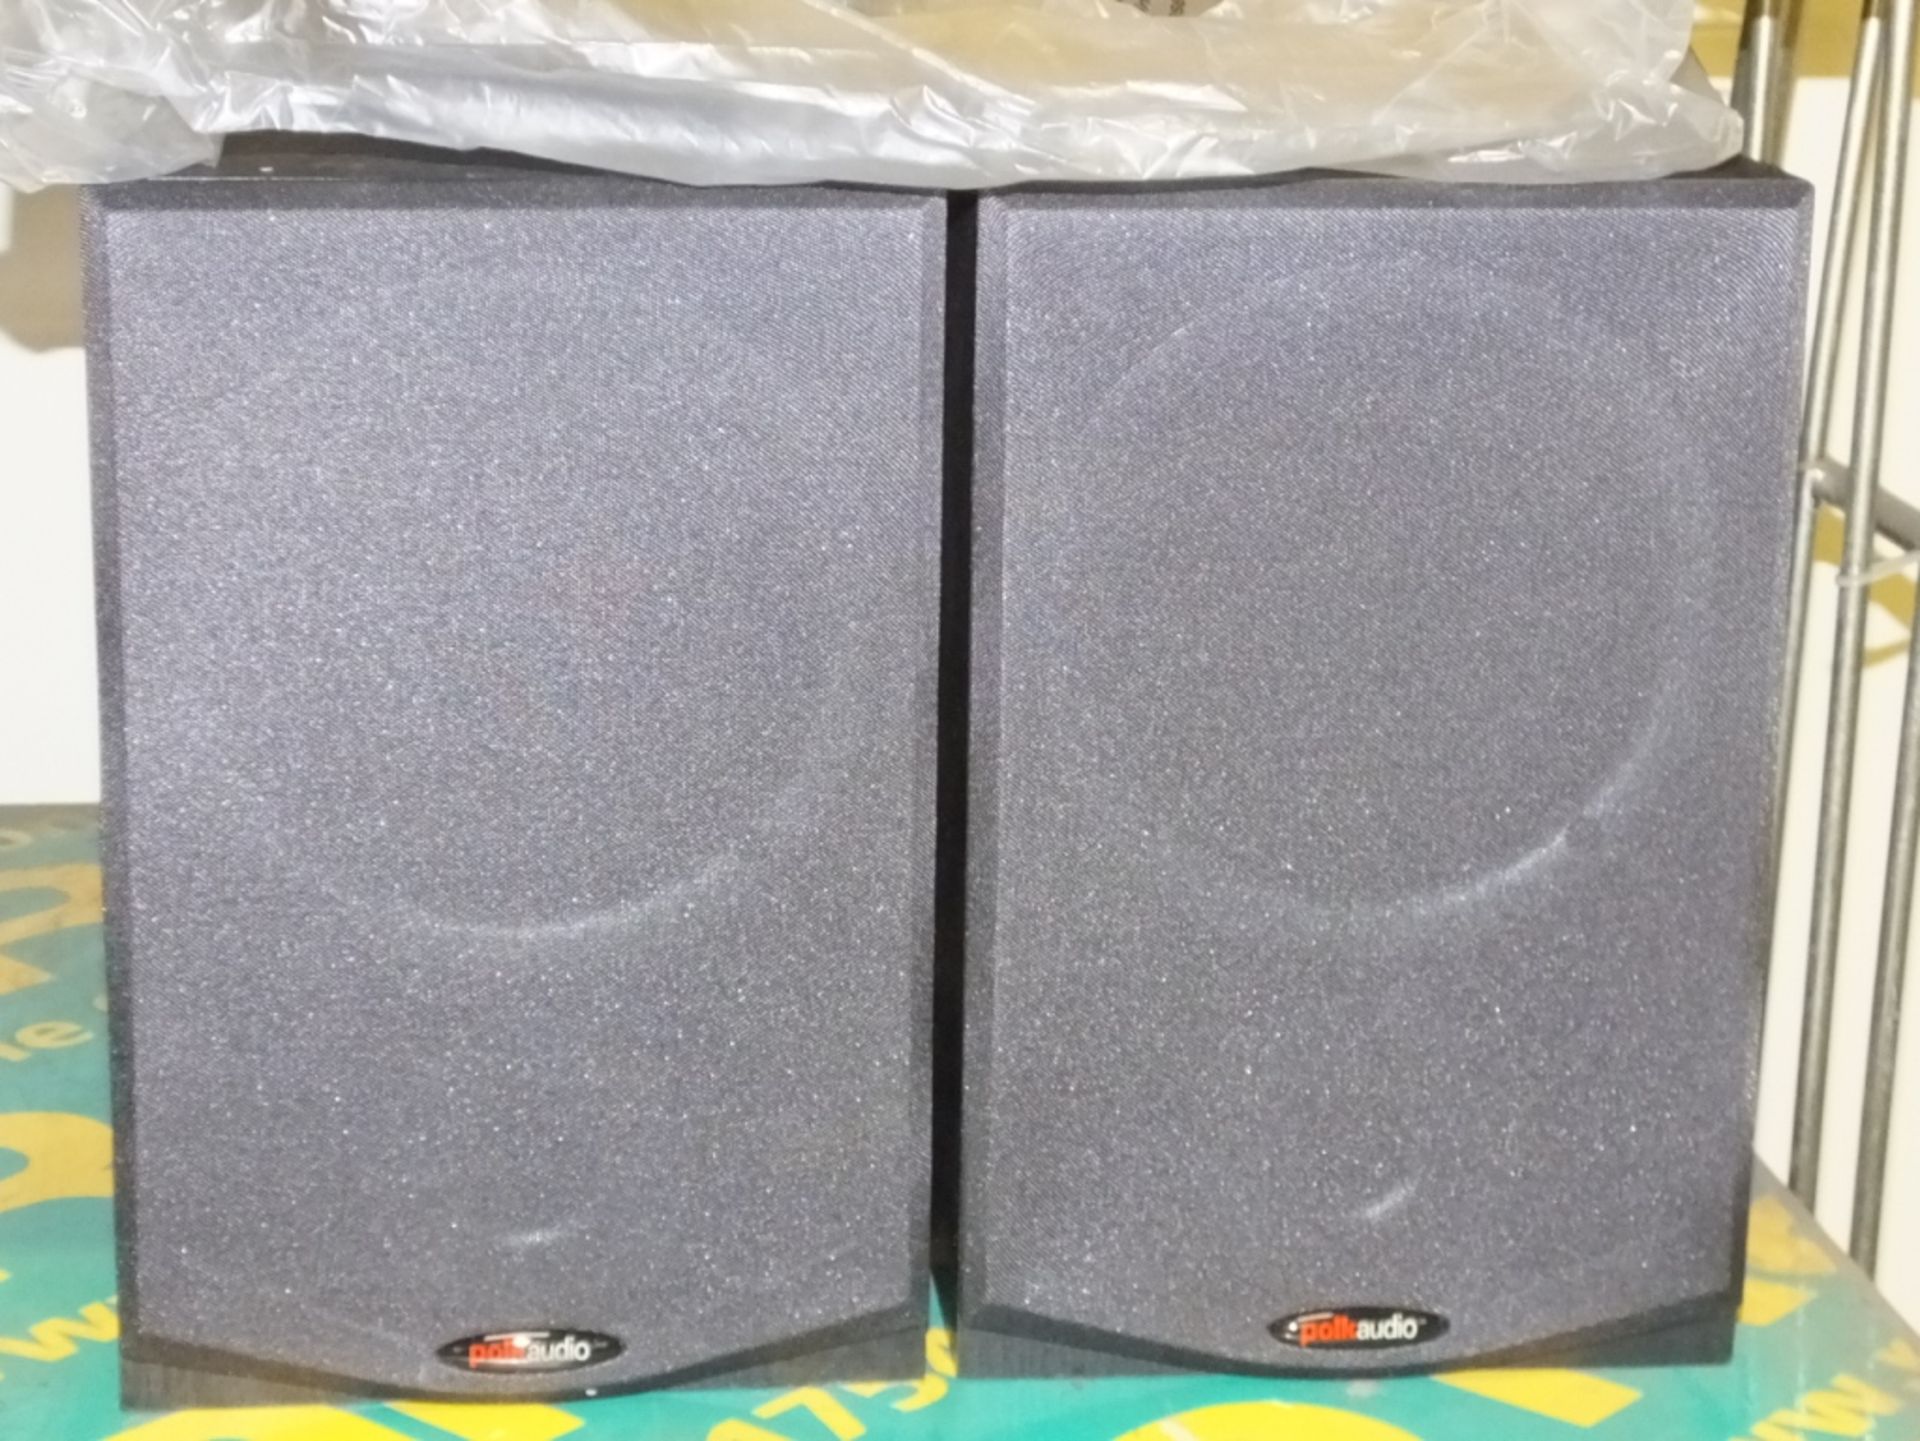 2x Polk Audio R150 Book end speakers